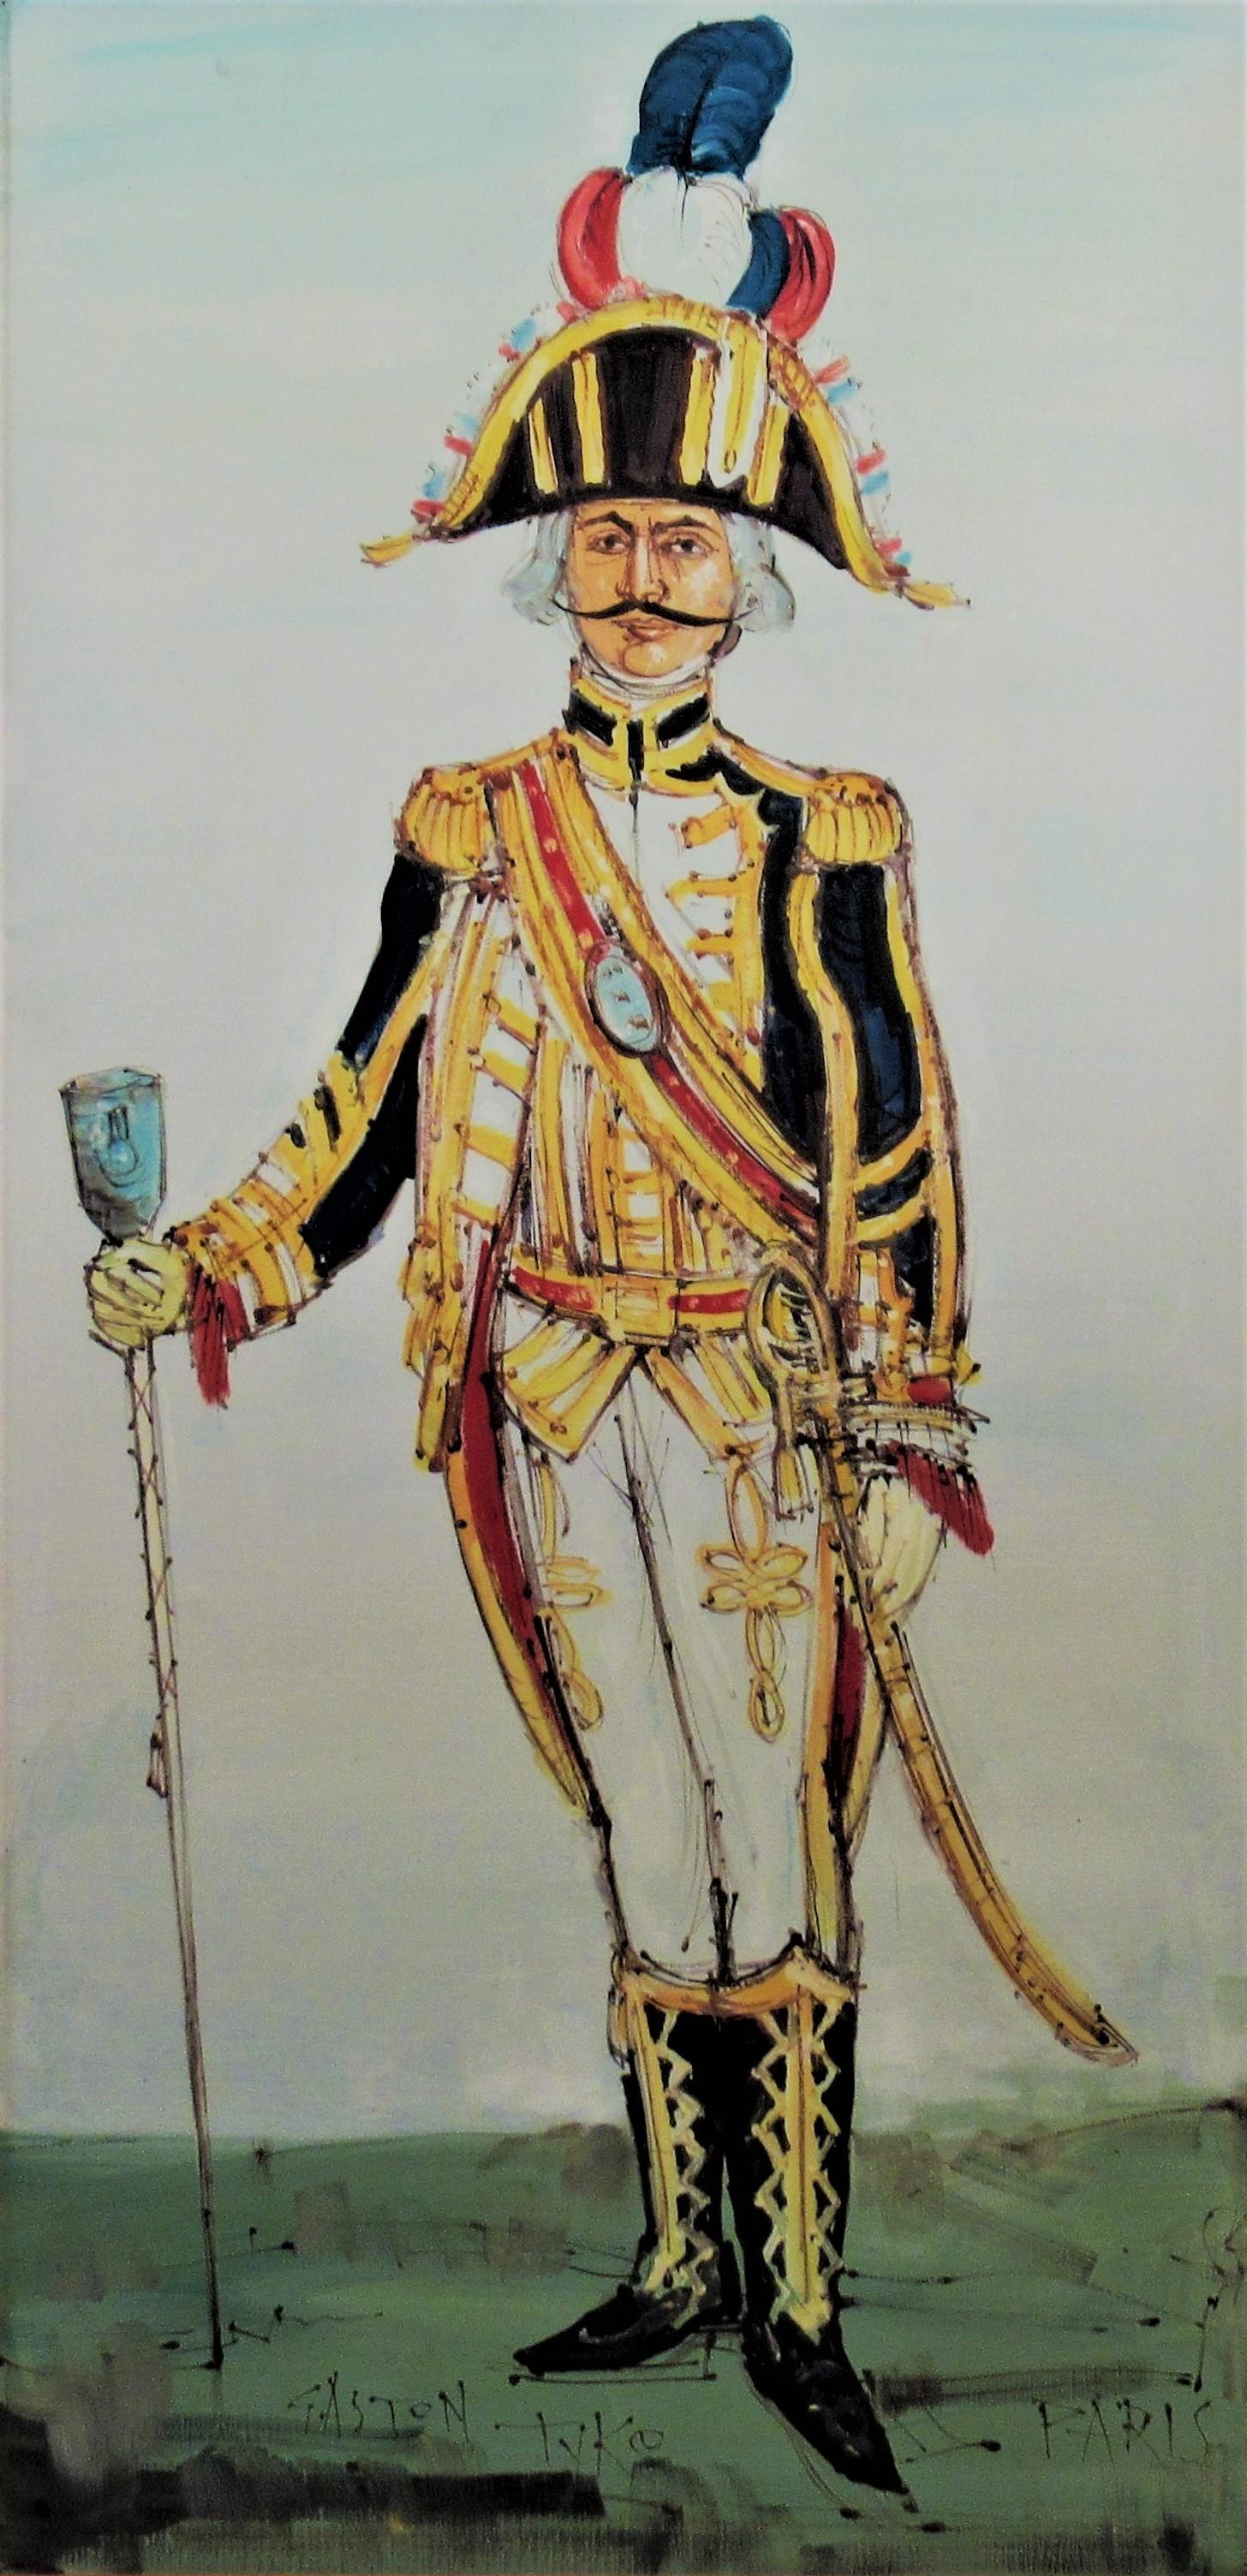 Tambour Major du Premier Empire, Paris. - Painting by Gaston Tyco